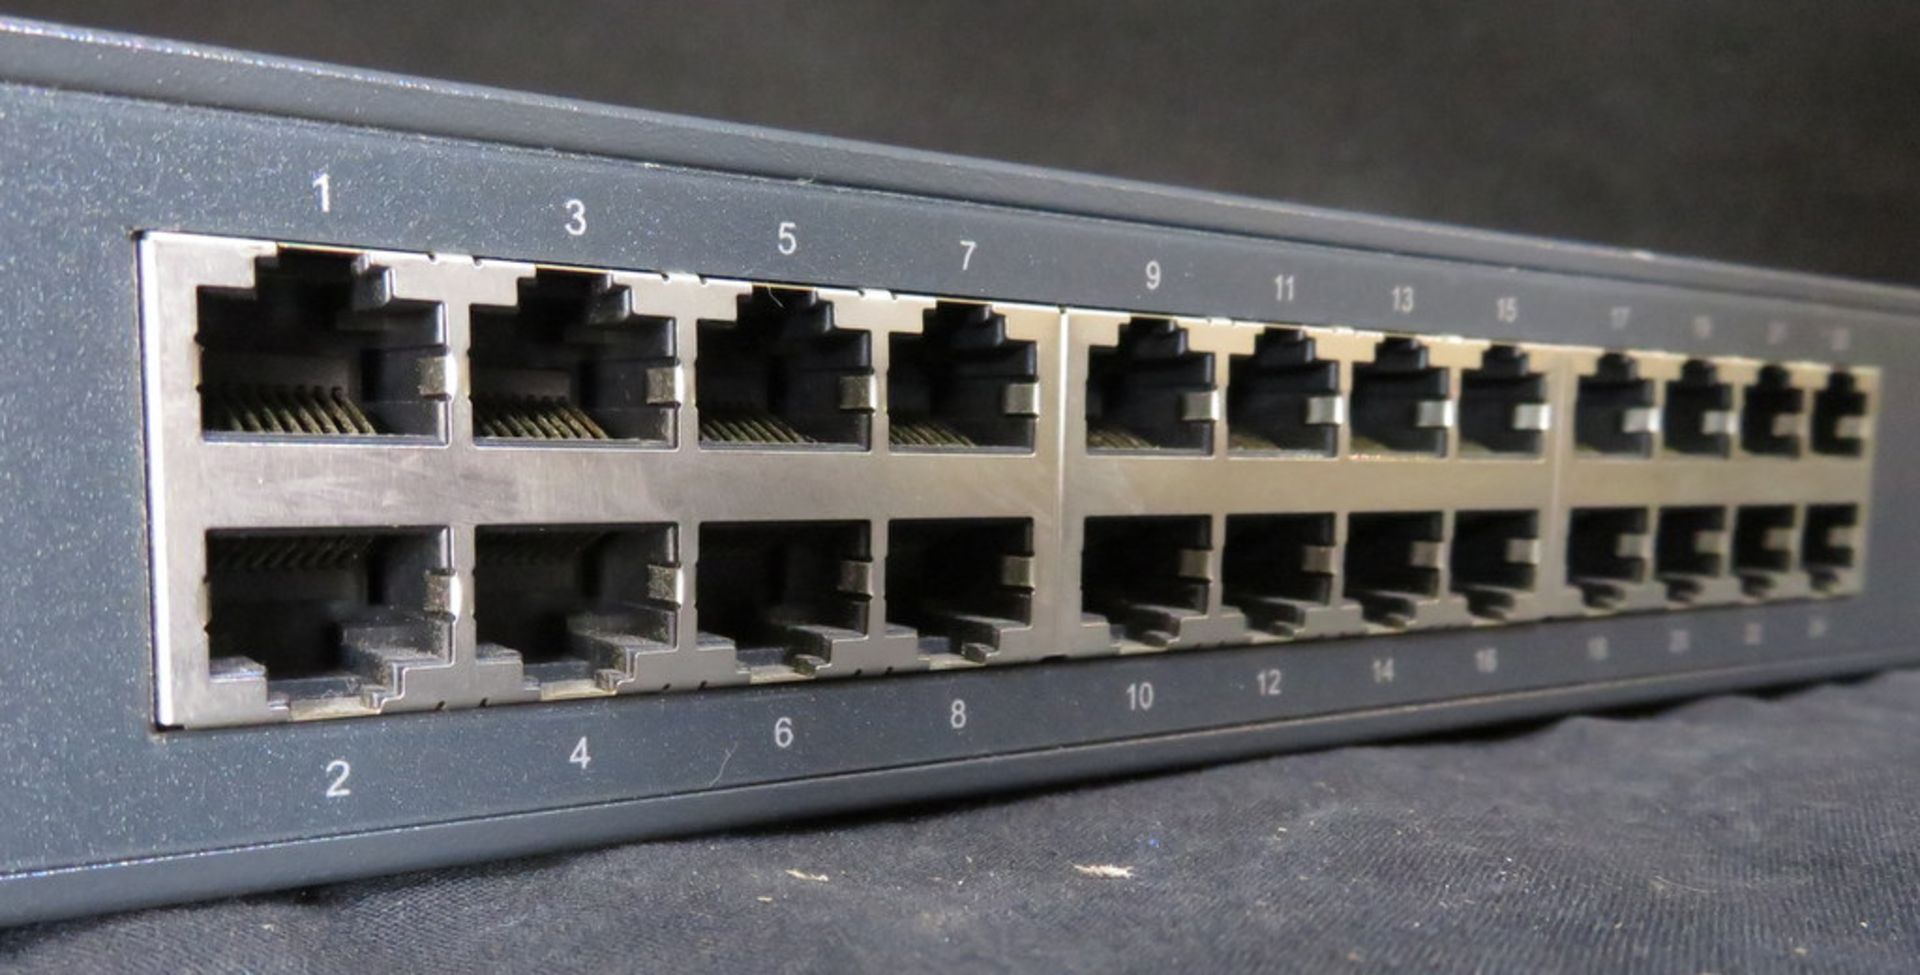 TP-Link TL-SG1024 24-port gigabit switch - Image 3 of 4